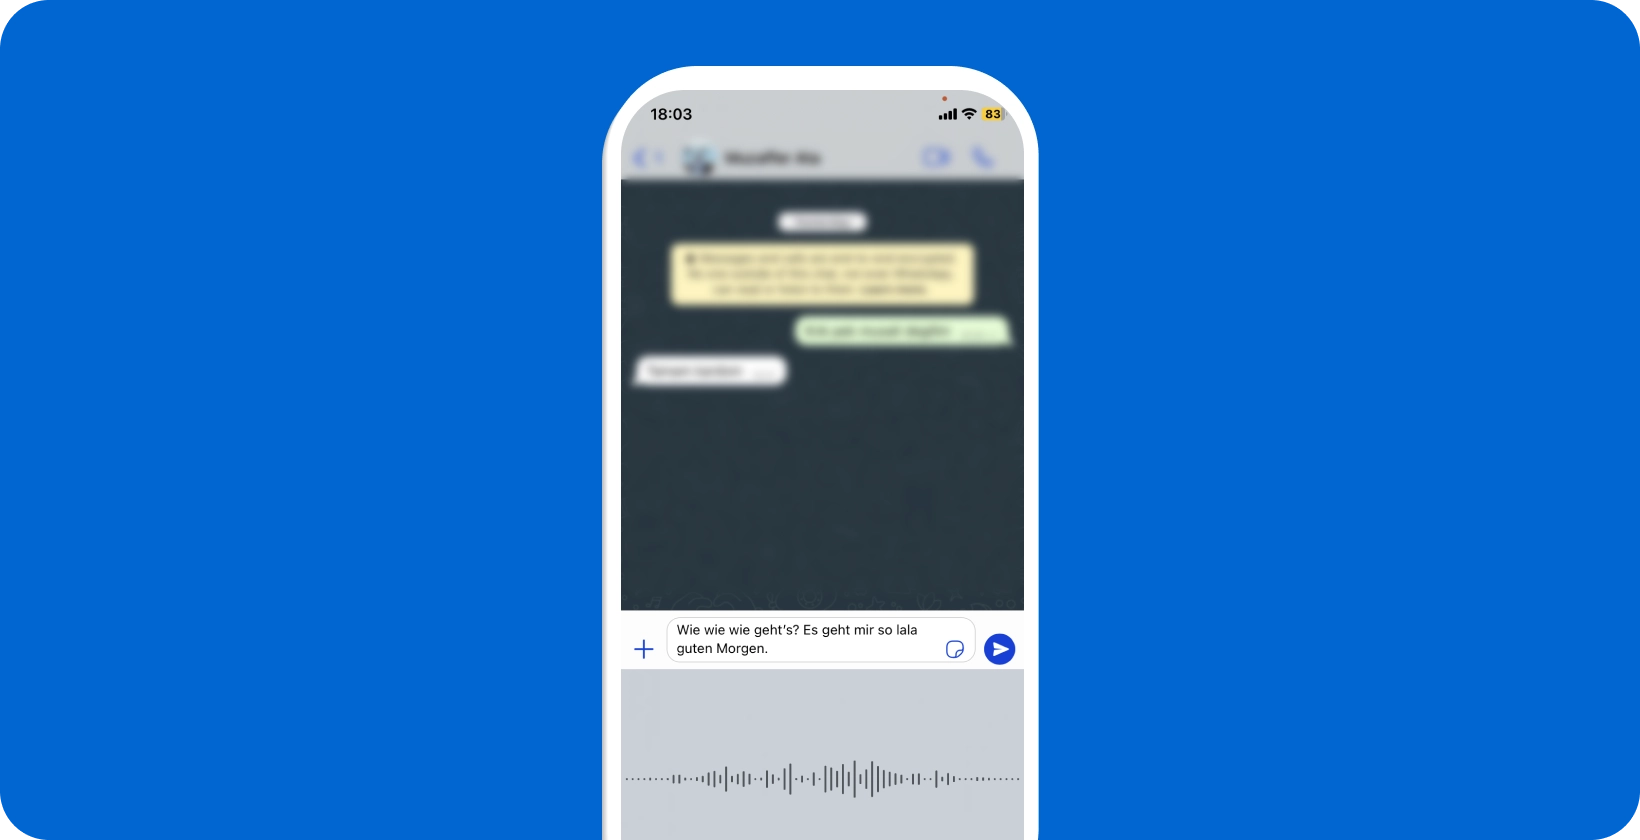 هاتف ذكي يعرض الإملاء الصوتي WhatsApp قيد التقدم ، ويعرض تحويل الكلام إلى نص في الوقت الفعلي.